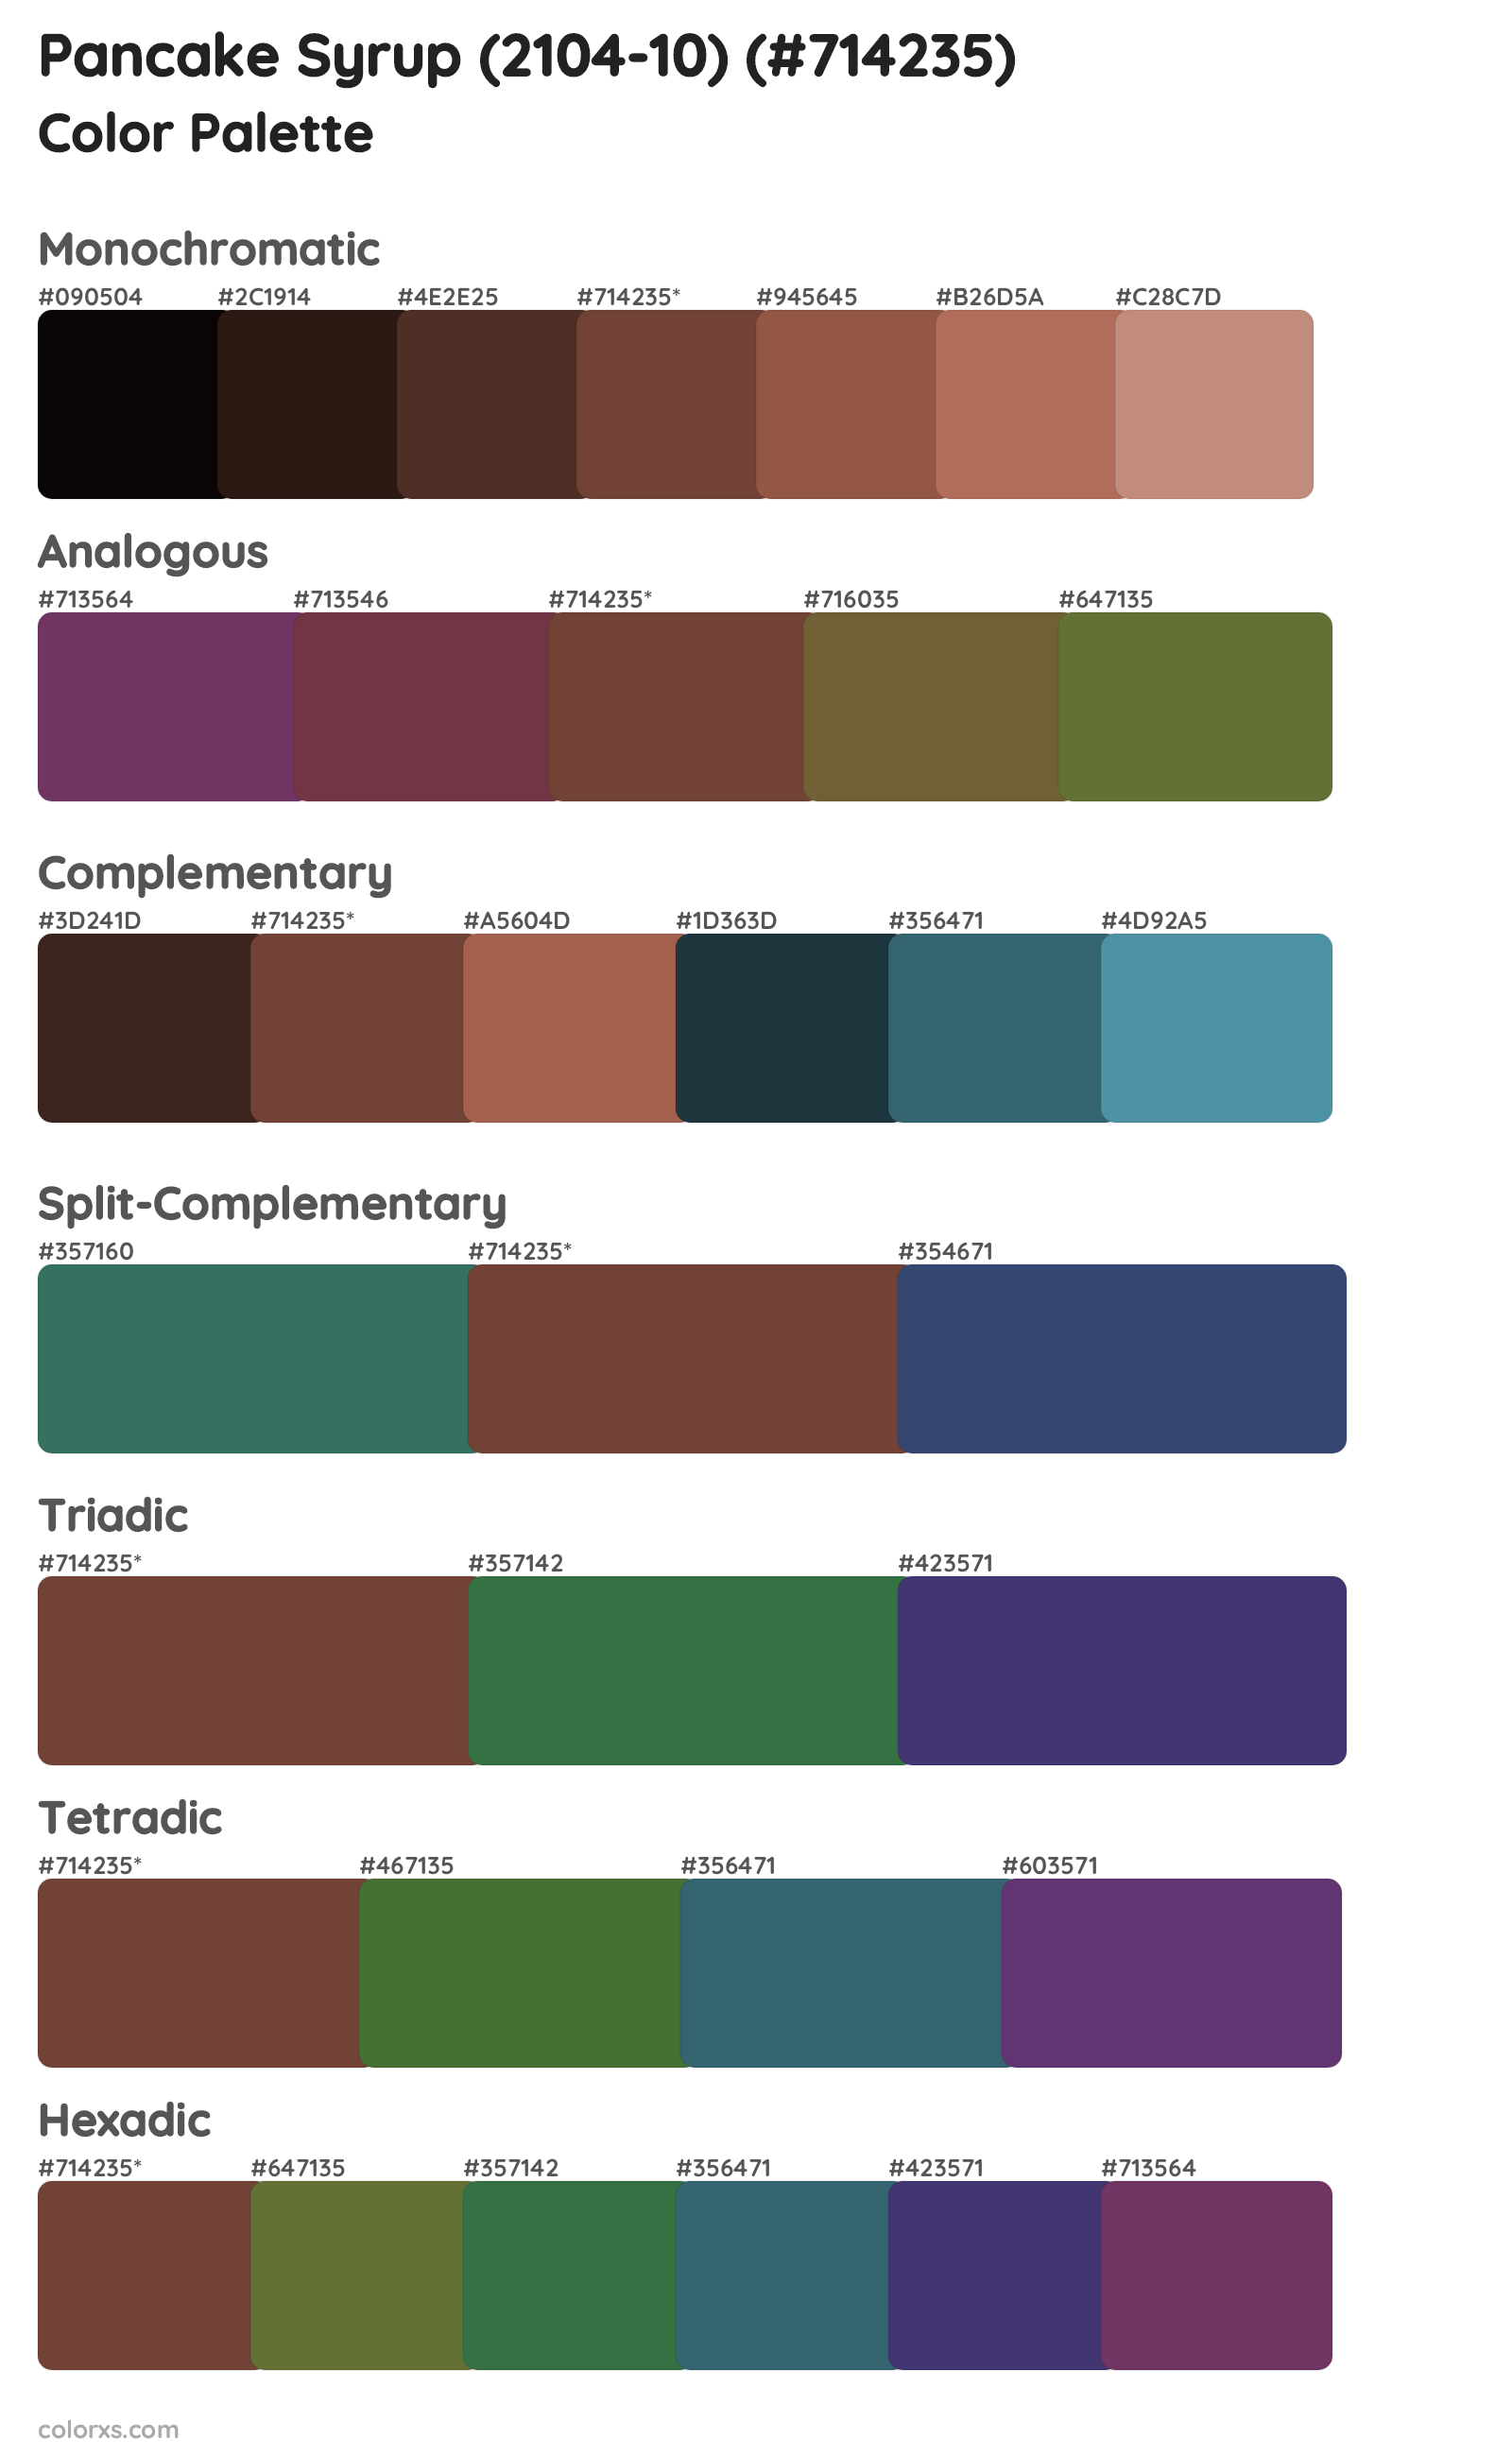 Pancake Syrup (2104-10) Color Scheme Palettes